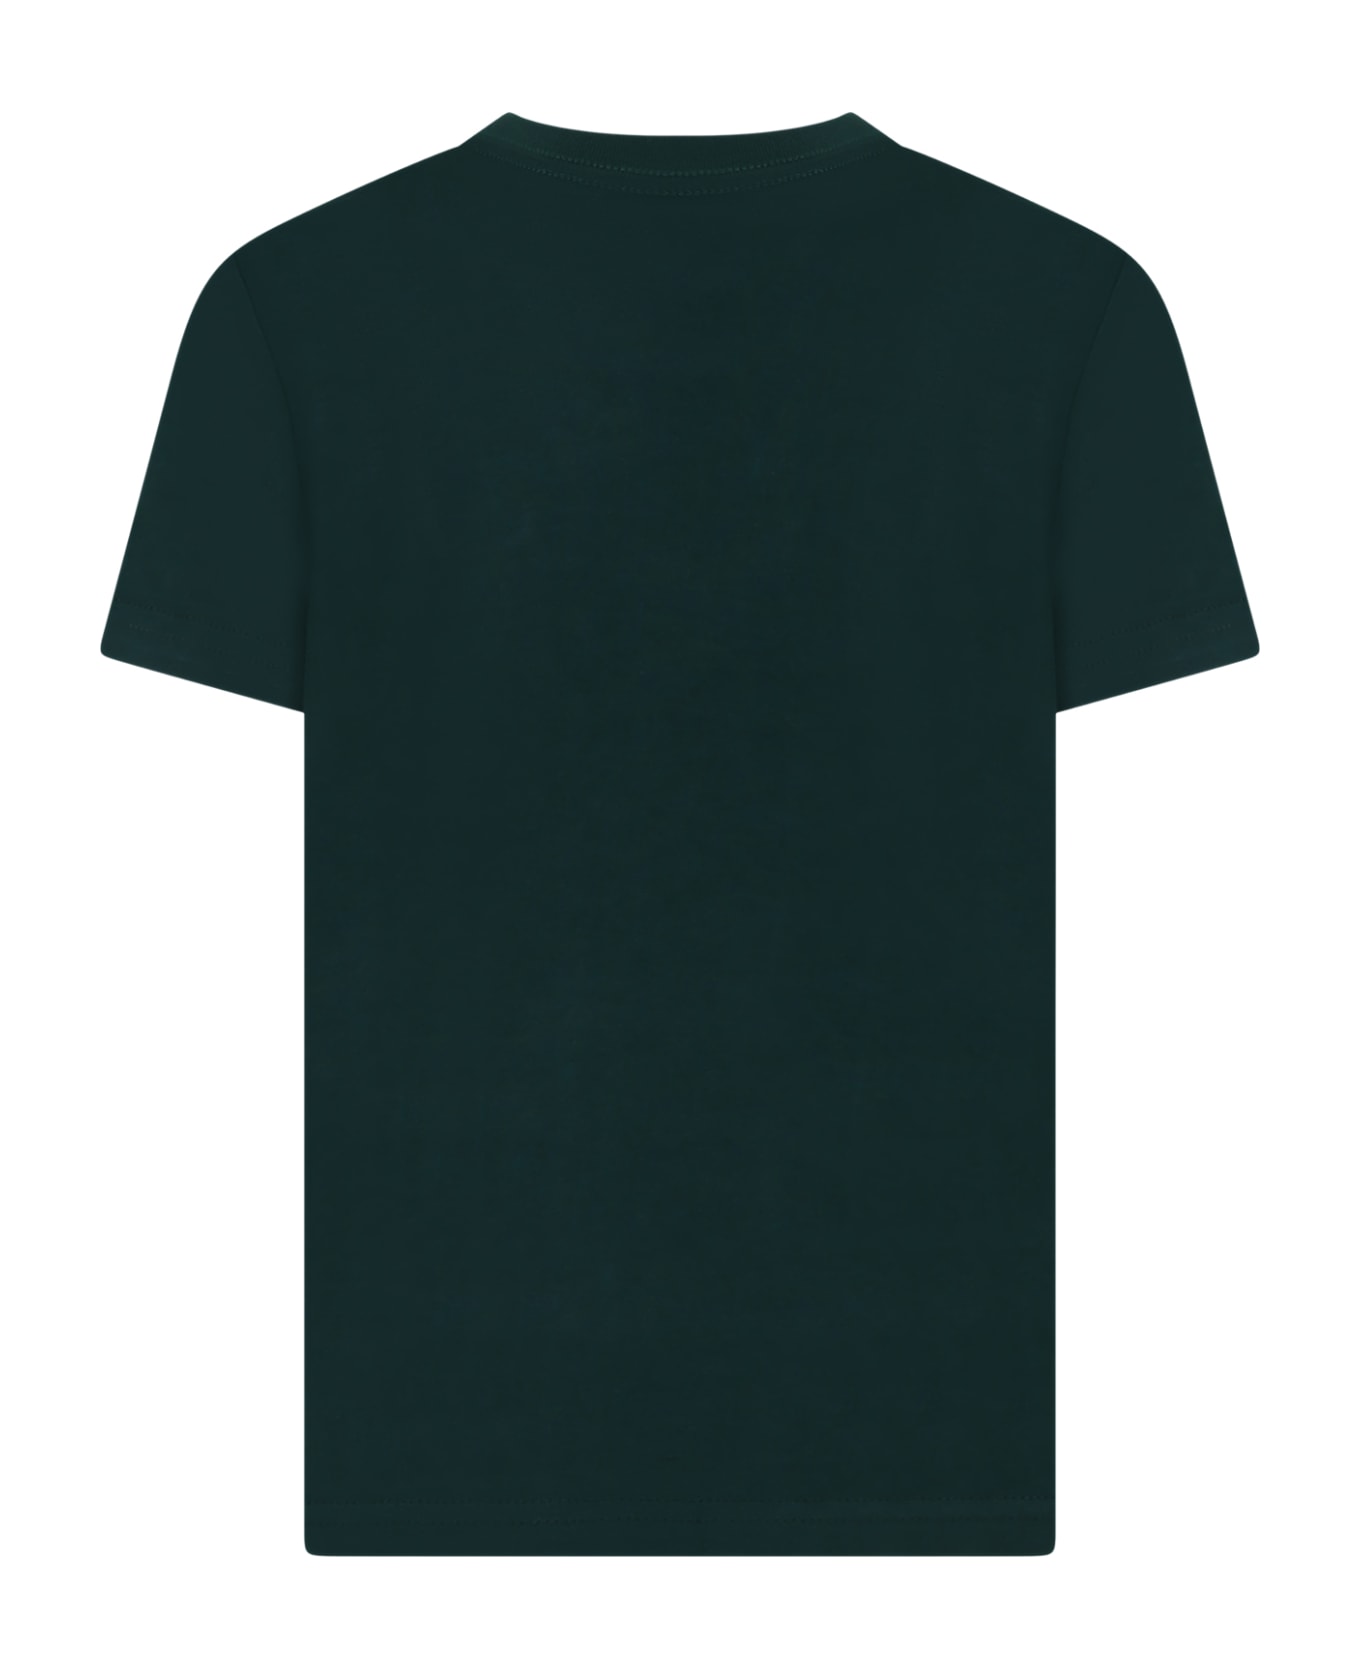 Ralph Lauren Green T-shirt For Boy With Logo - Green